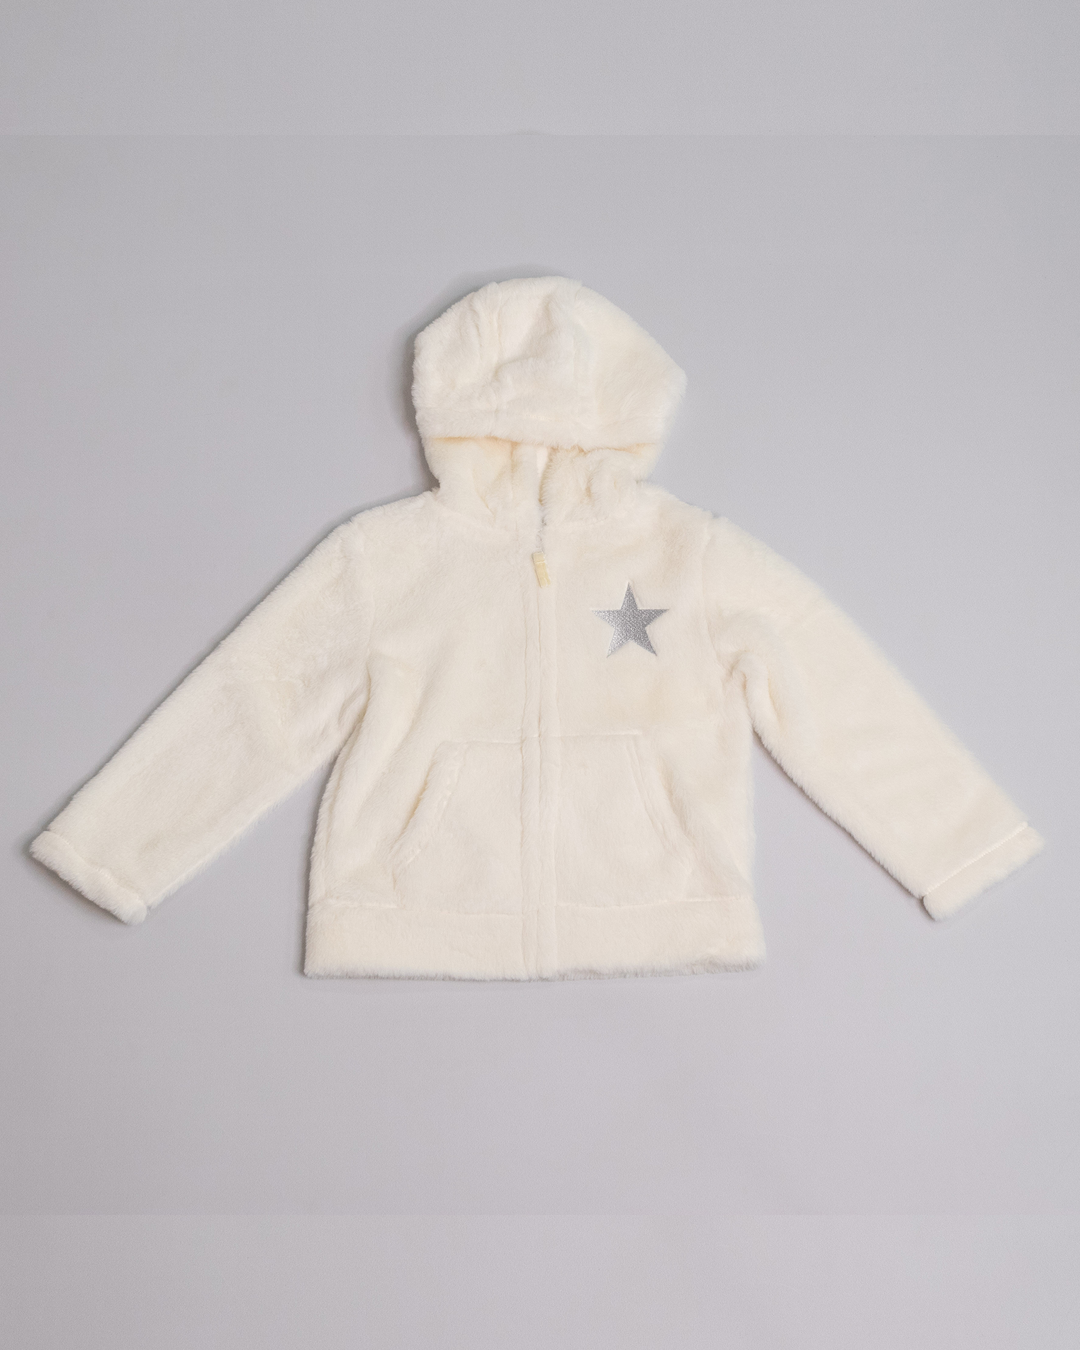 Sweatshirt crema con bordado de estrella plateada